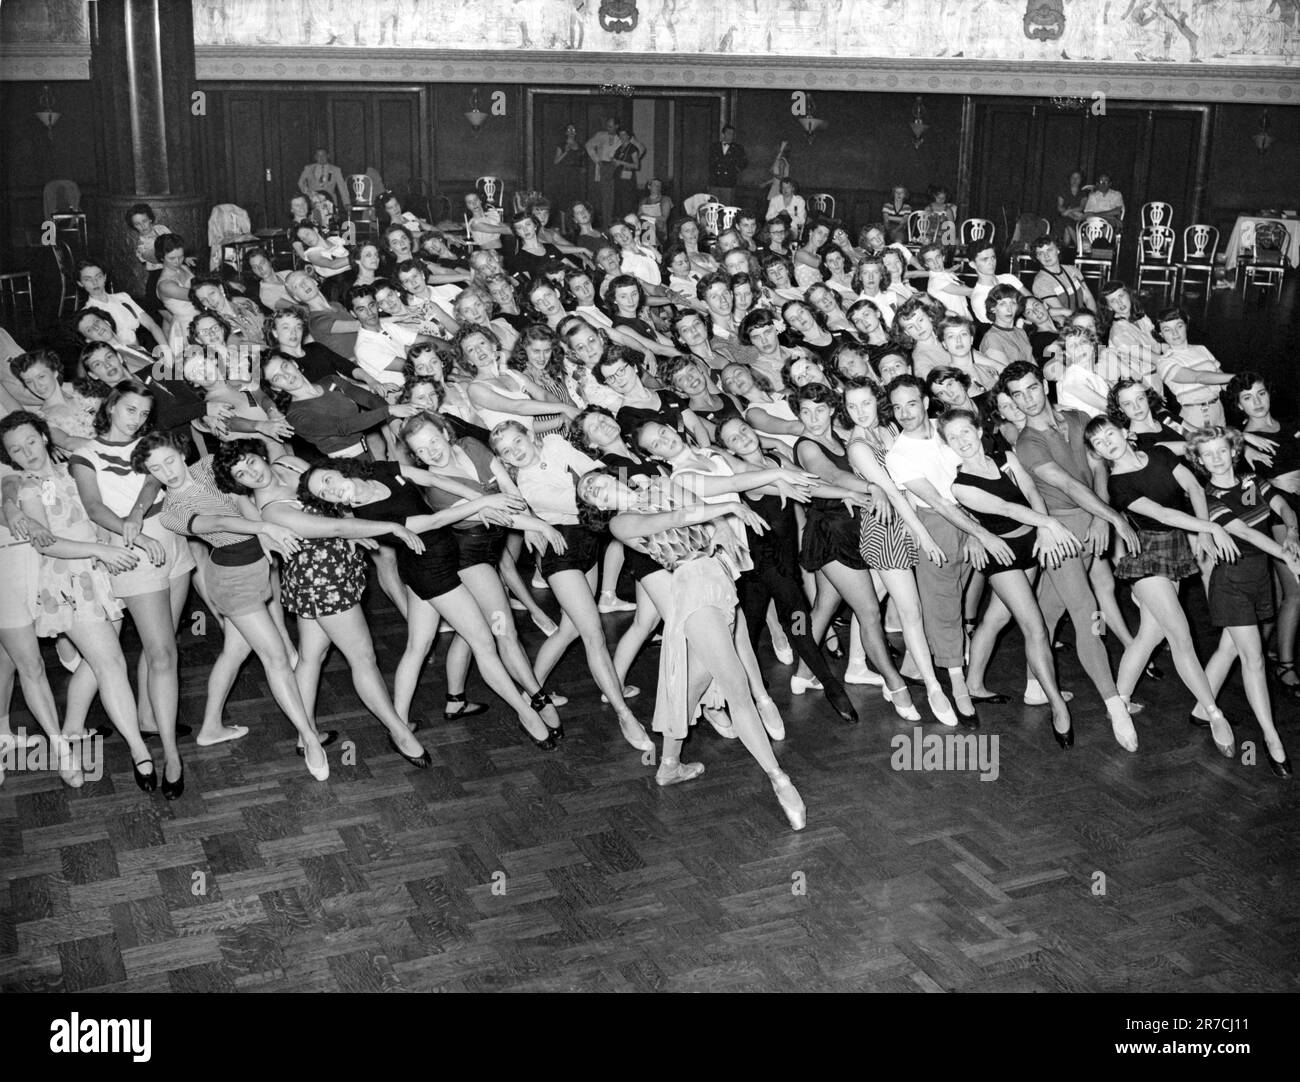 Chicago, Illinois : août 1950. Les membres de l'Association nationale de danse et les artistes affiliés de l'Université des Arts posent pour un portrait de groupe décontracté lorsqu'ils célèbrent leur première année d'existence. Banque D'Images